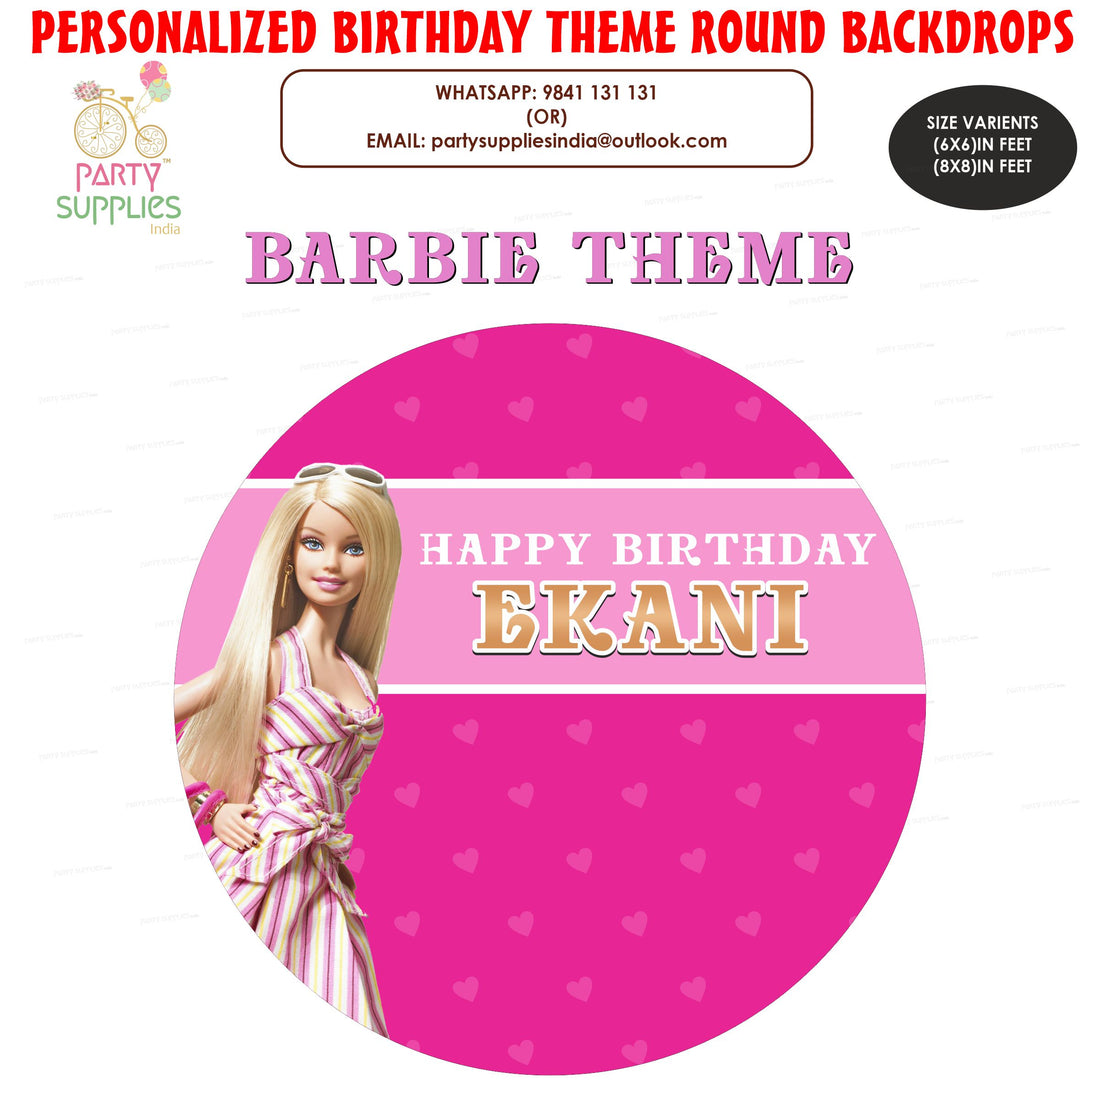 PSI Barbie Theme Round Backdrop